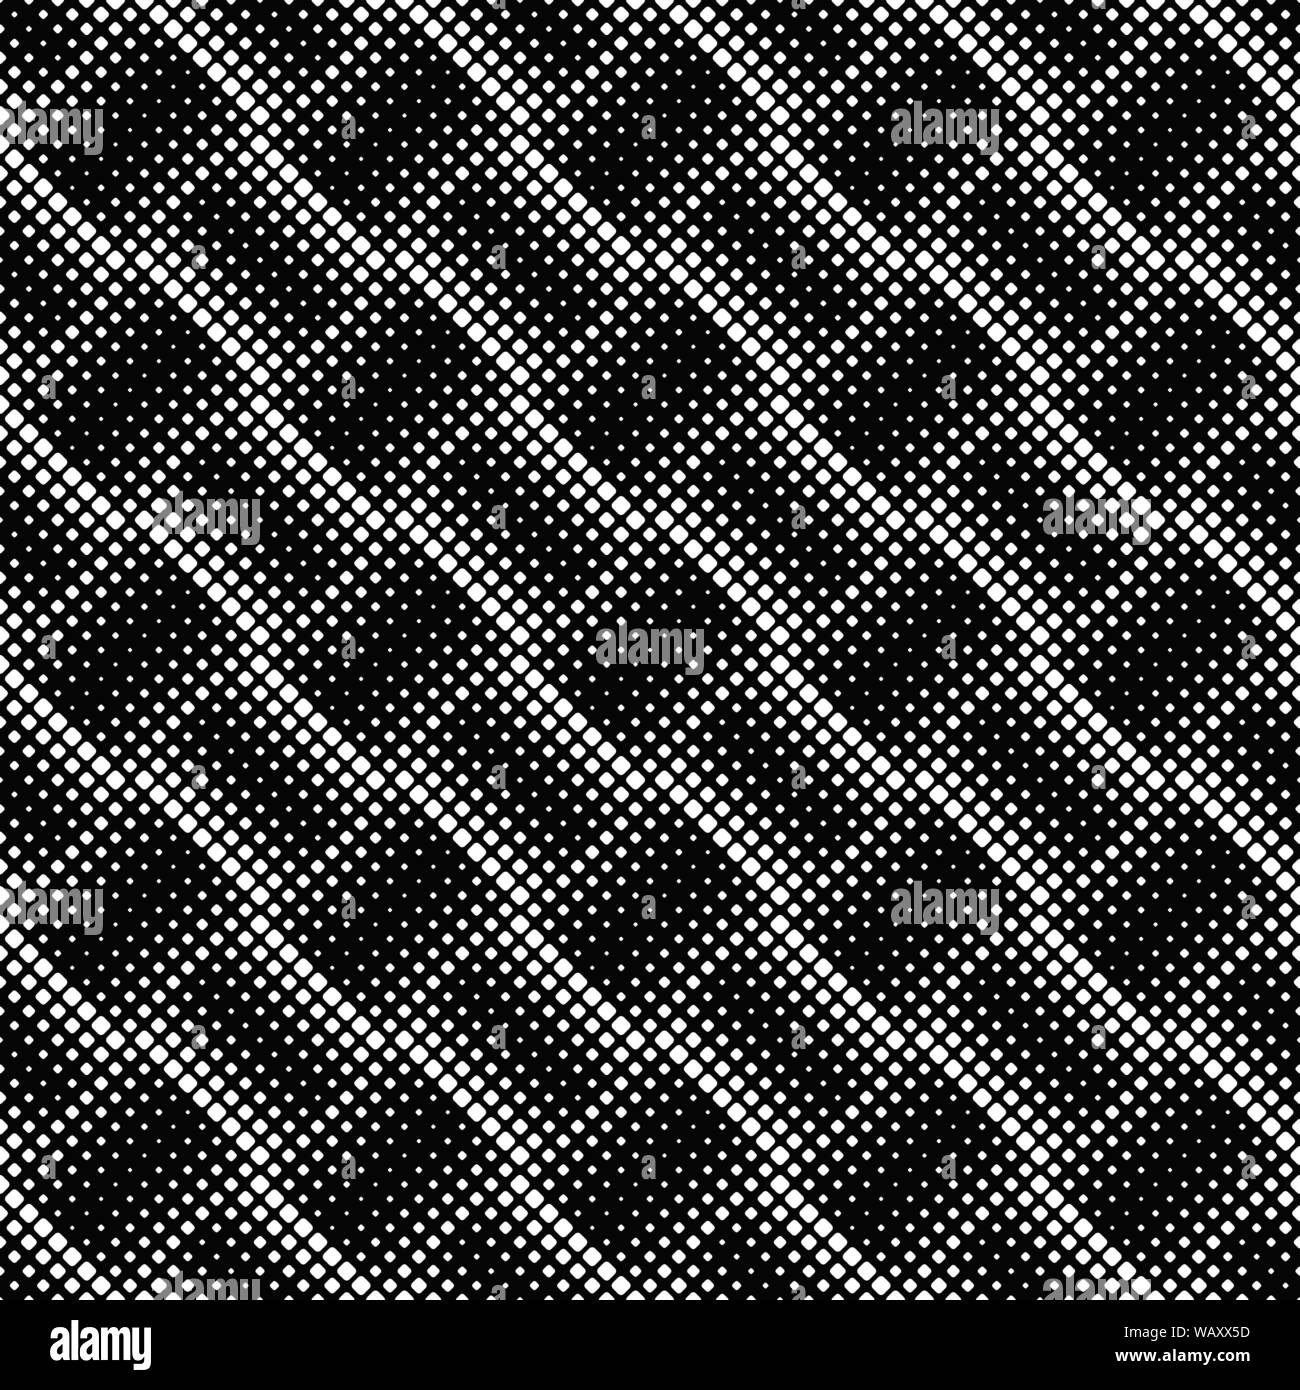 Schwarze und weiße Diagonalen quadratischen Muster Hintergrund - abstract Vector Illustration Stock Vektor